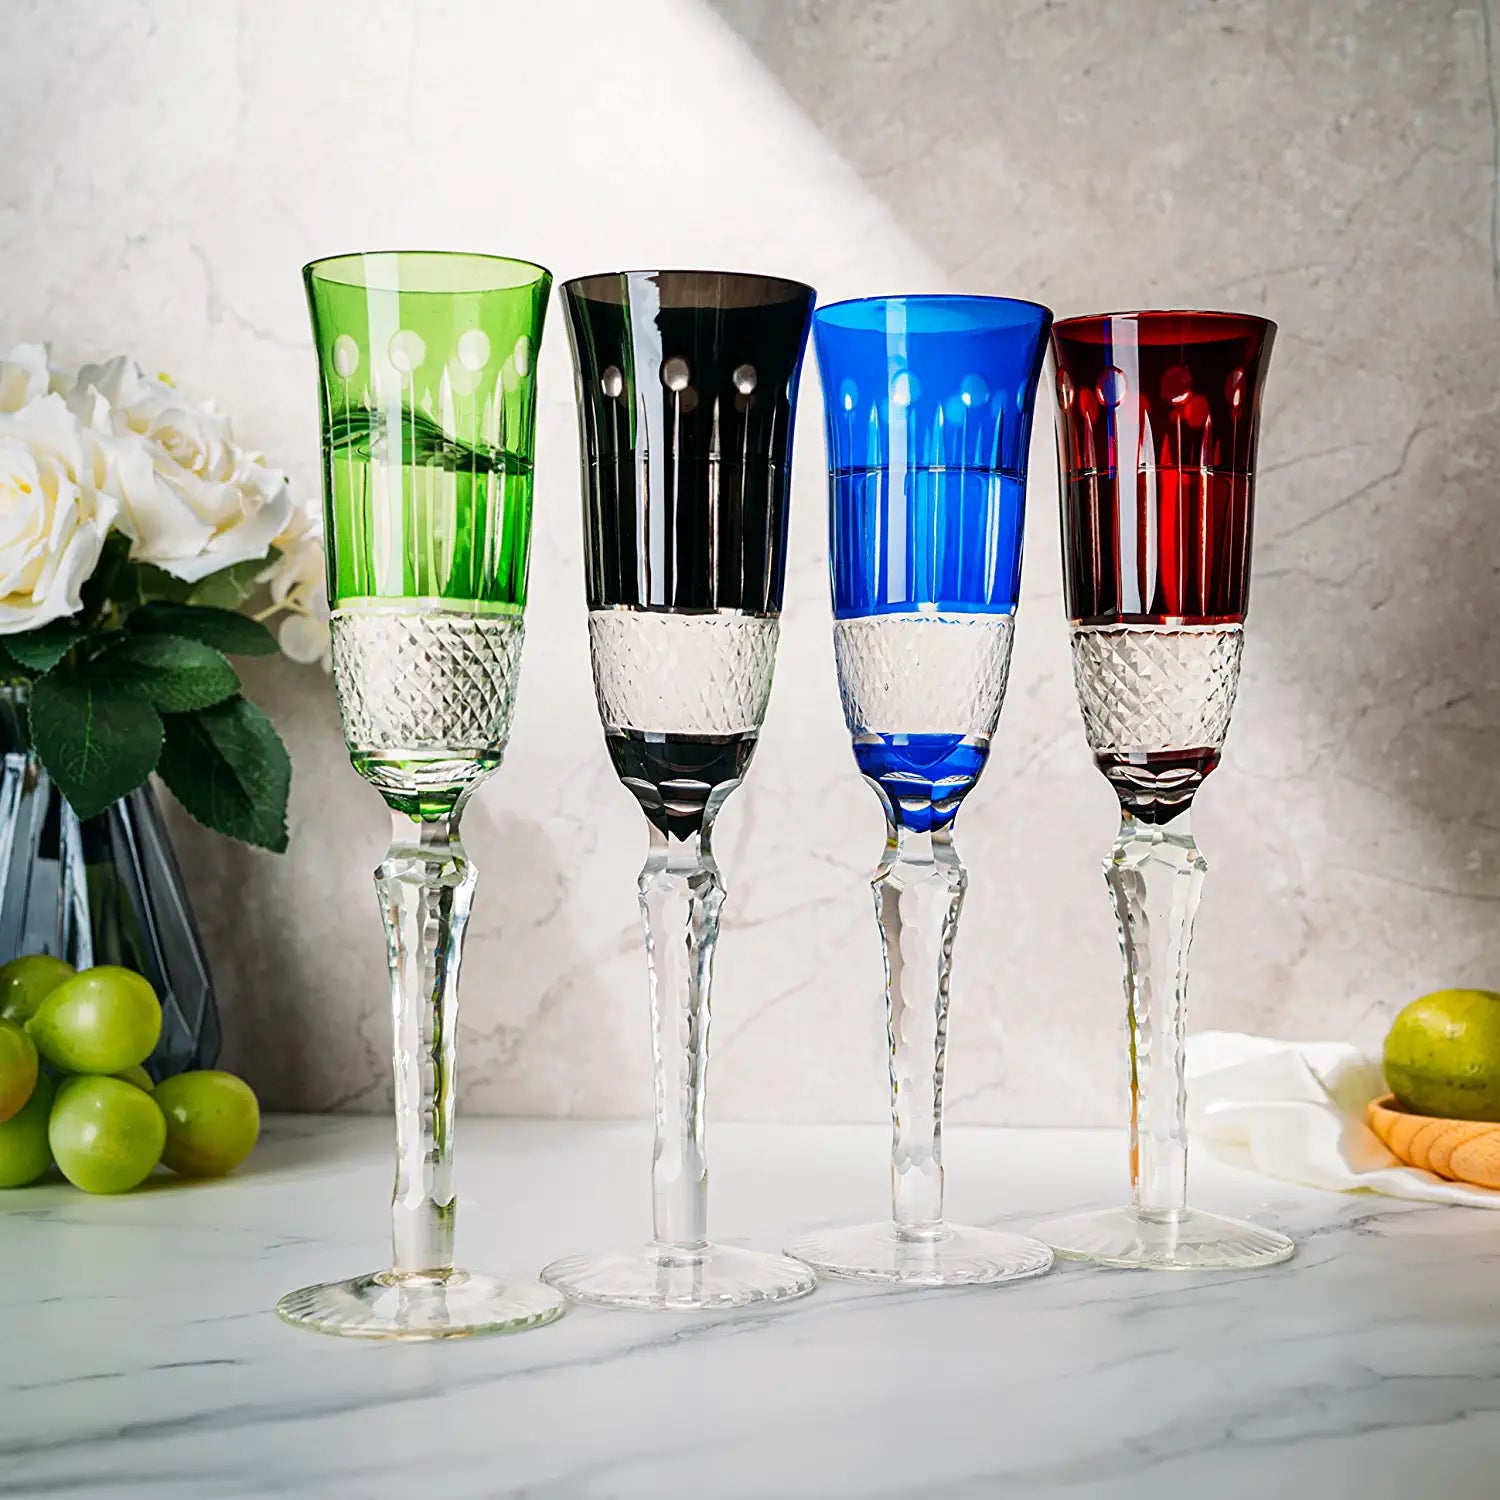 Ravenna Wine Glasses, Kensington Row